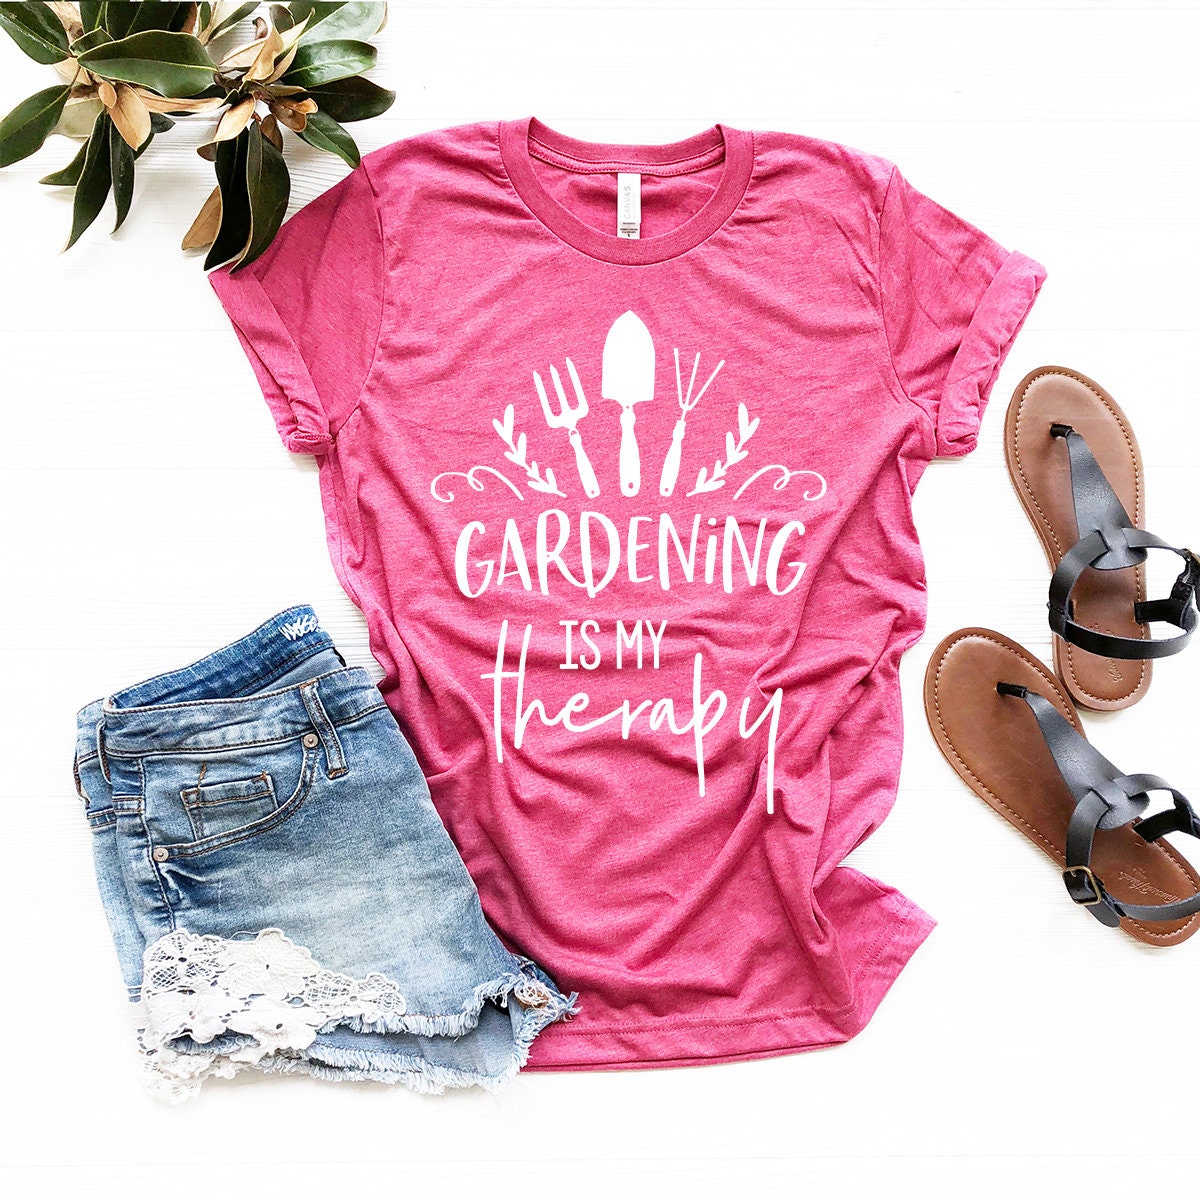 Funny Gardener Shirt, Plant Lover Gift, Plant Lady, Funny Gardening Shirt, Funny Garden Shirt, Gardening Is My Therapy Shirt, Gardener Shirt - Fastdeliverytees.com